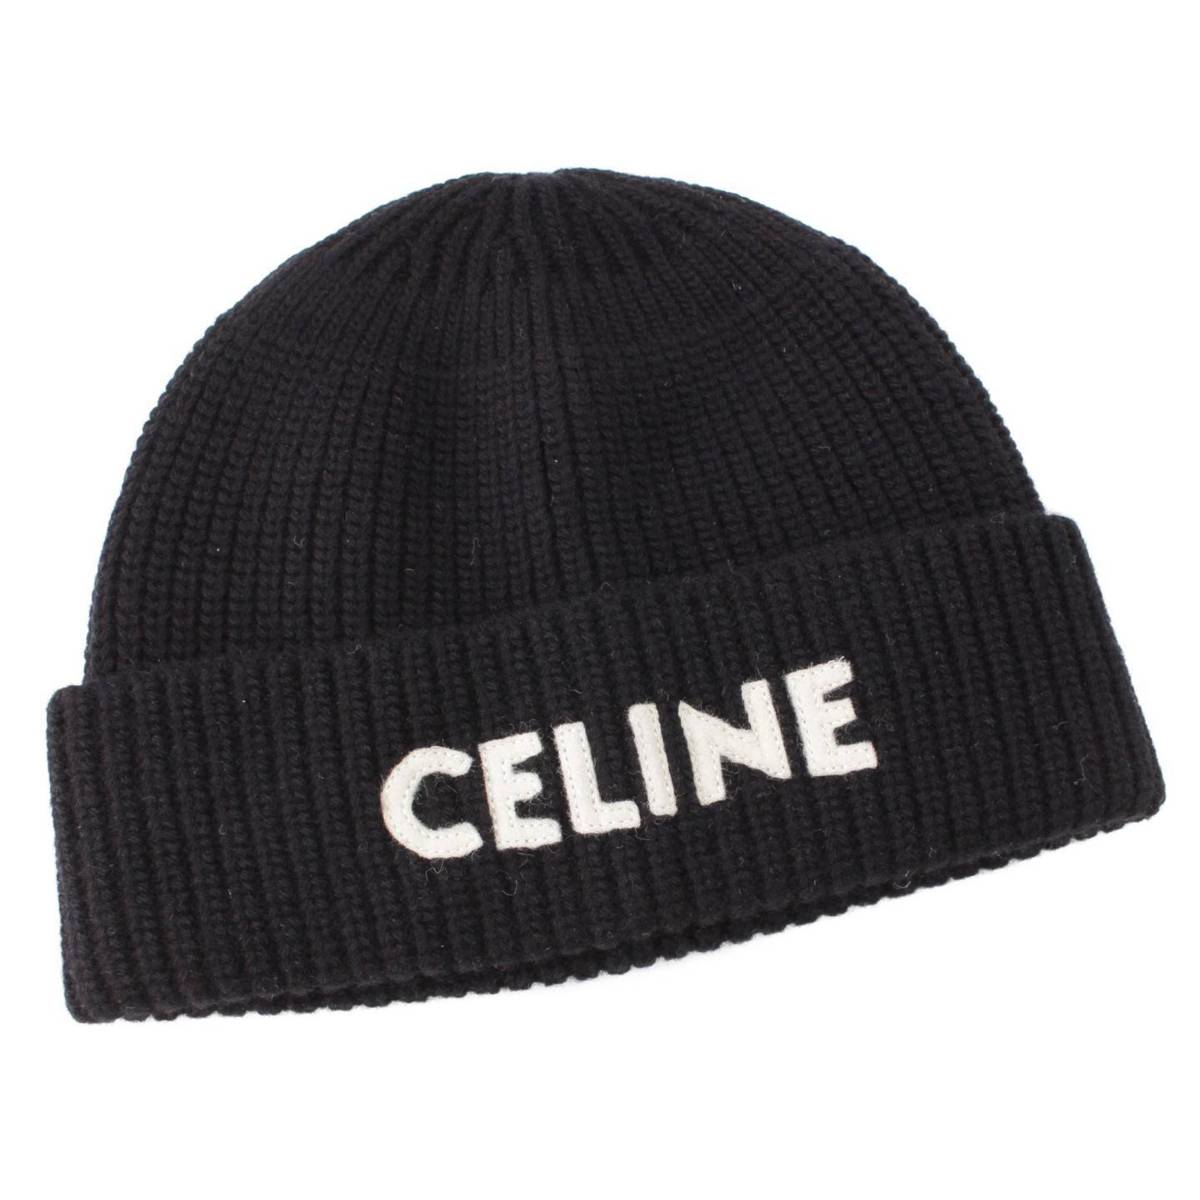 セリーヌ(Celine) 22AW ロゴ エンブロイダリー ウール ニット 帽子 ビーニー 2A61W535 ブラック